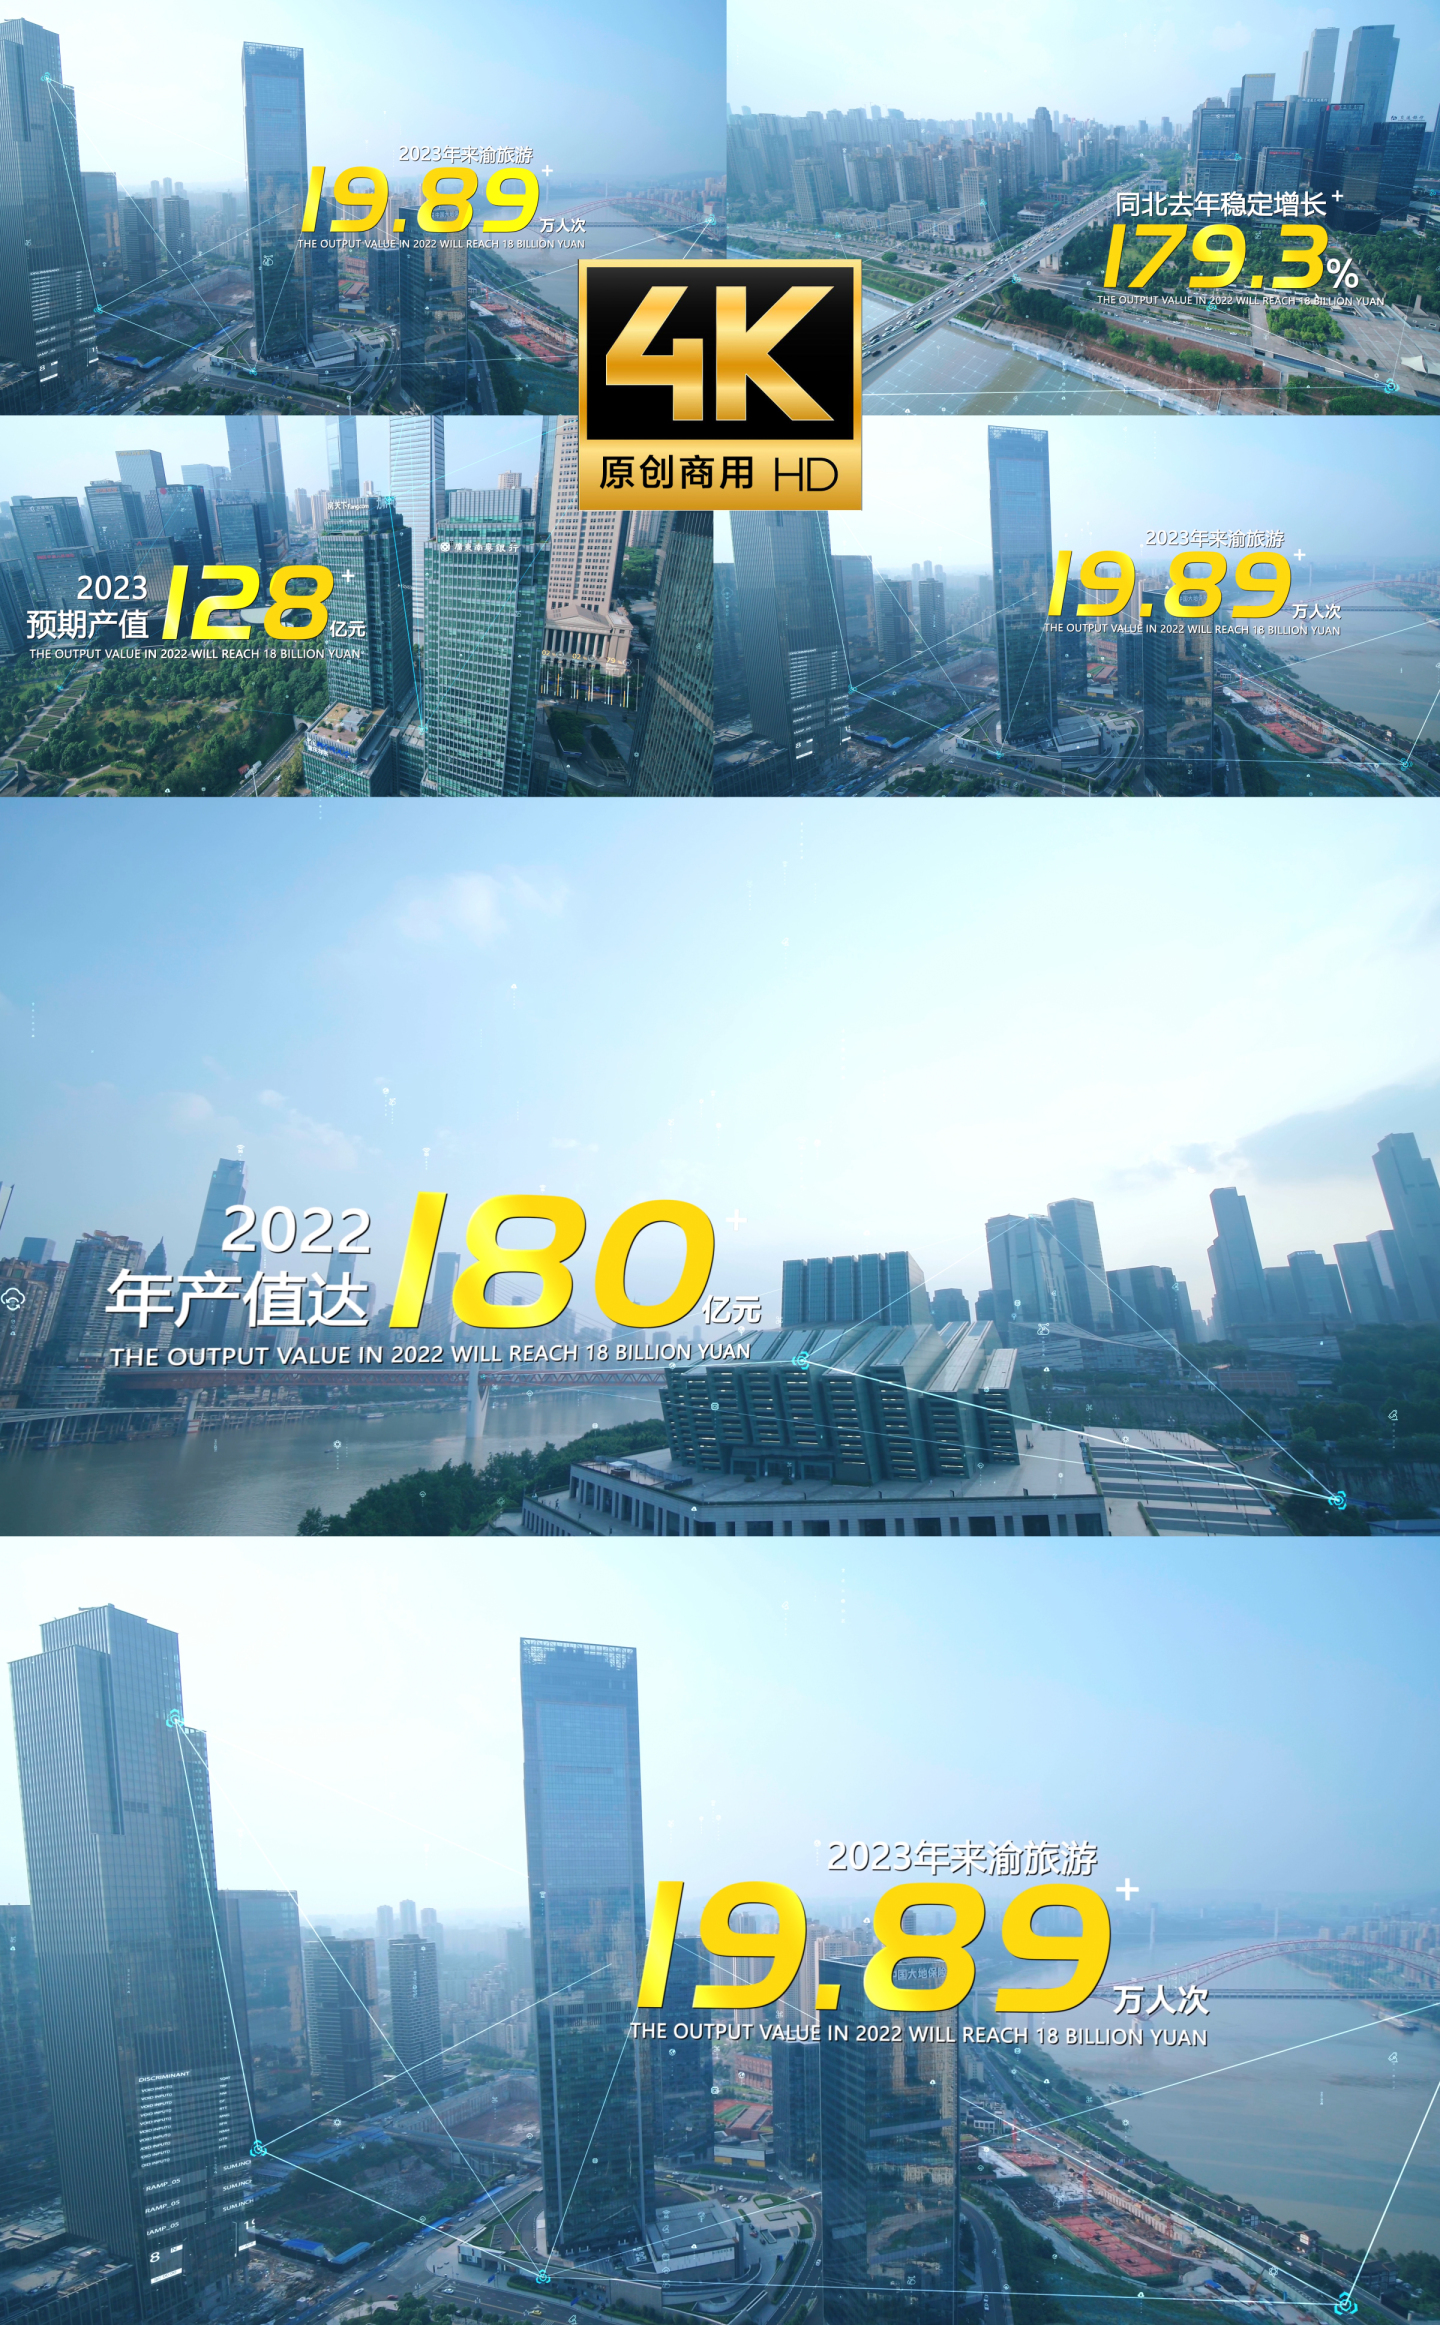 重庆城市数据 科技城市数据文字展示